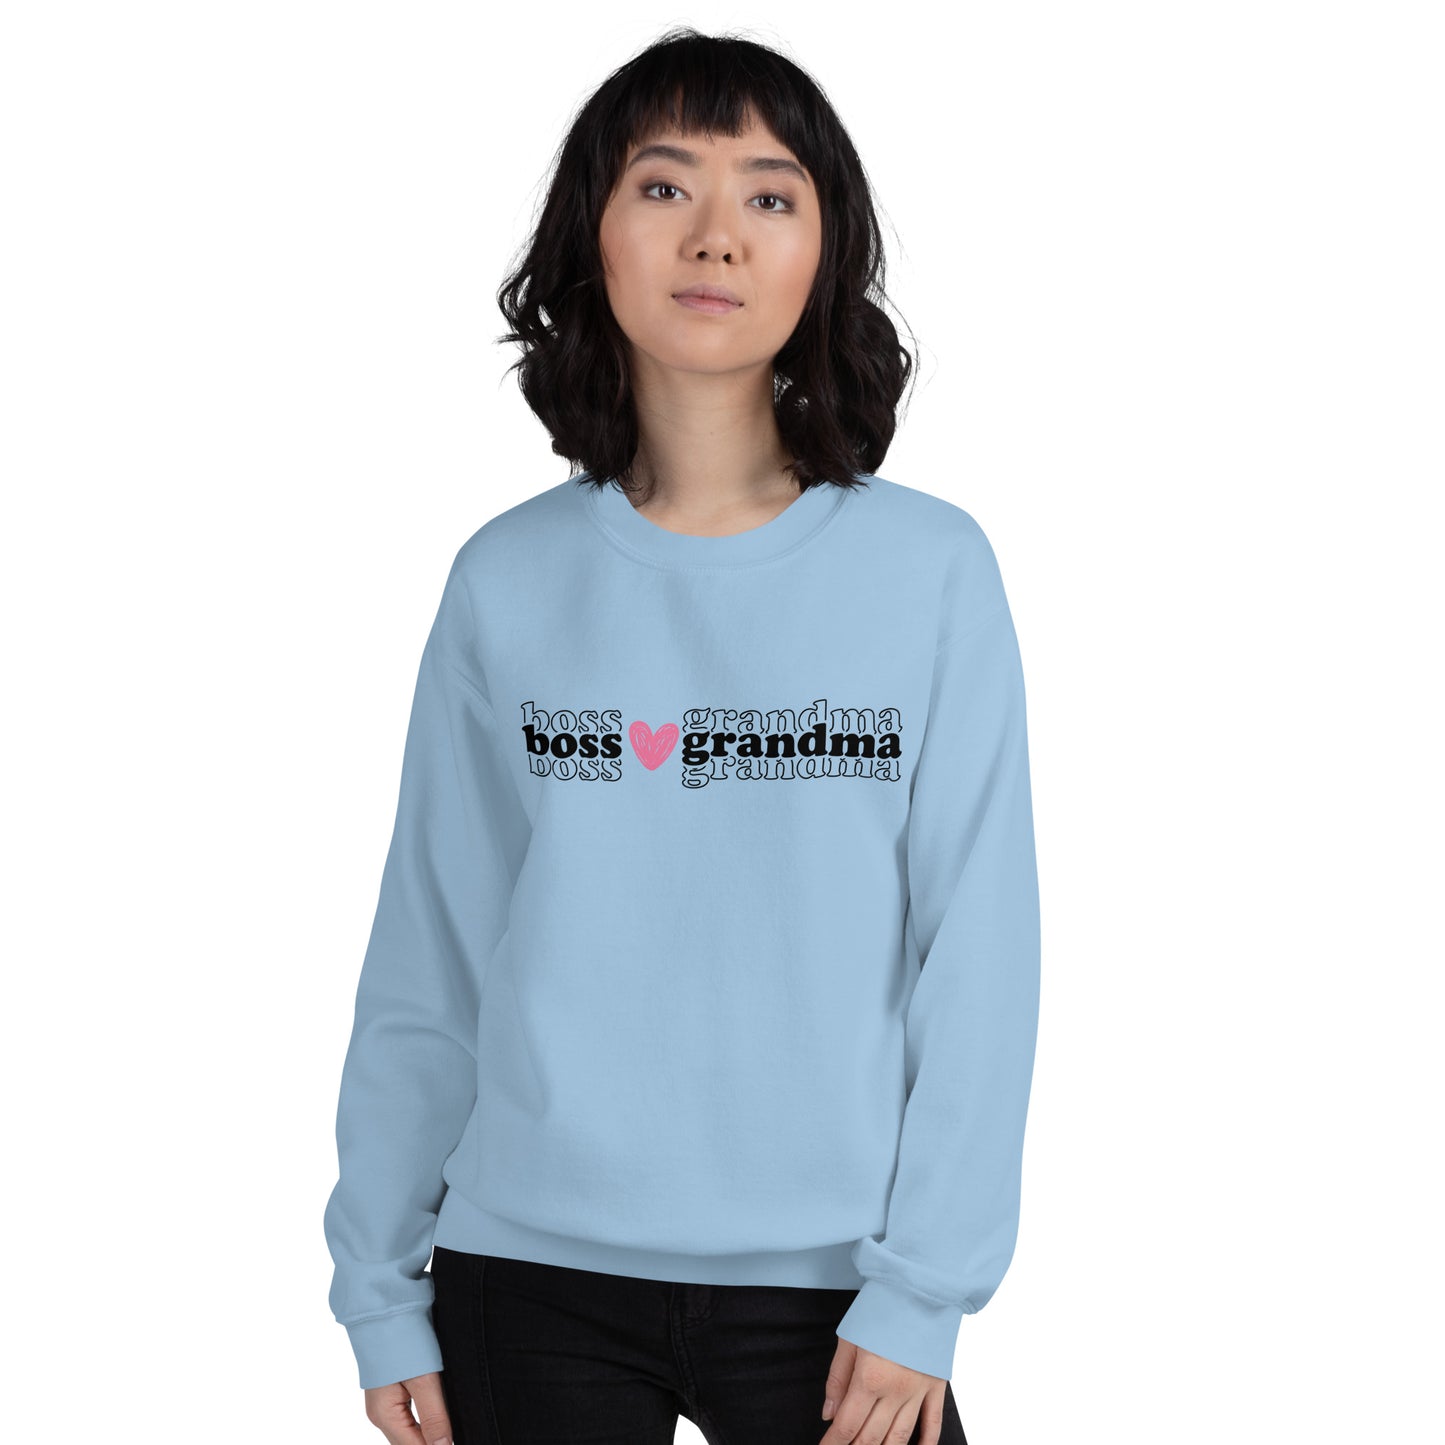 BOSS GRANDMA - Unisex Sweatshirt